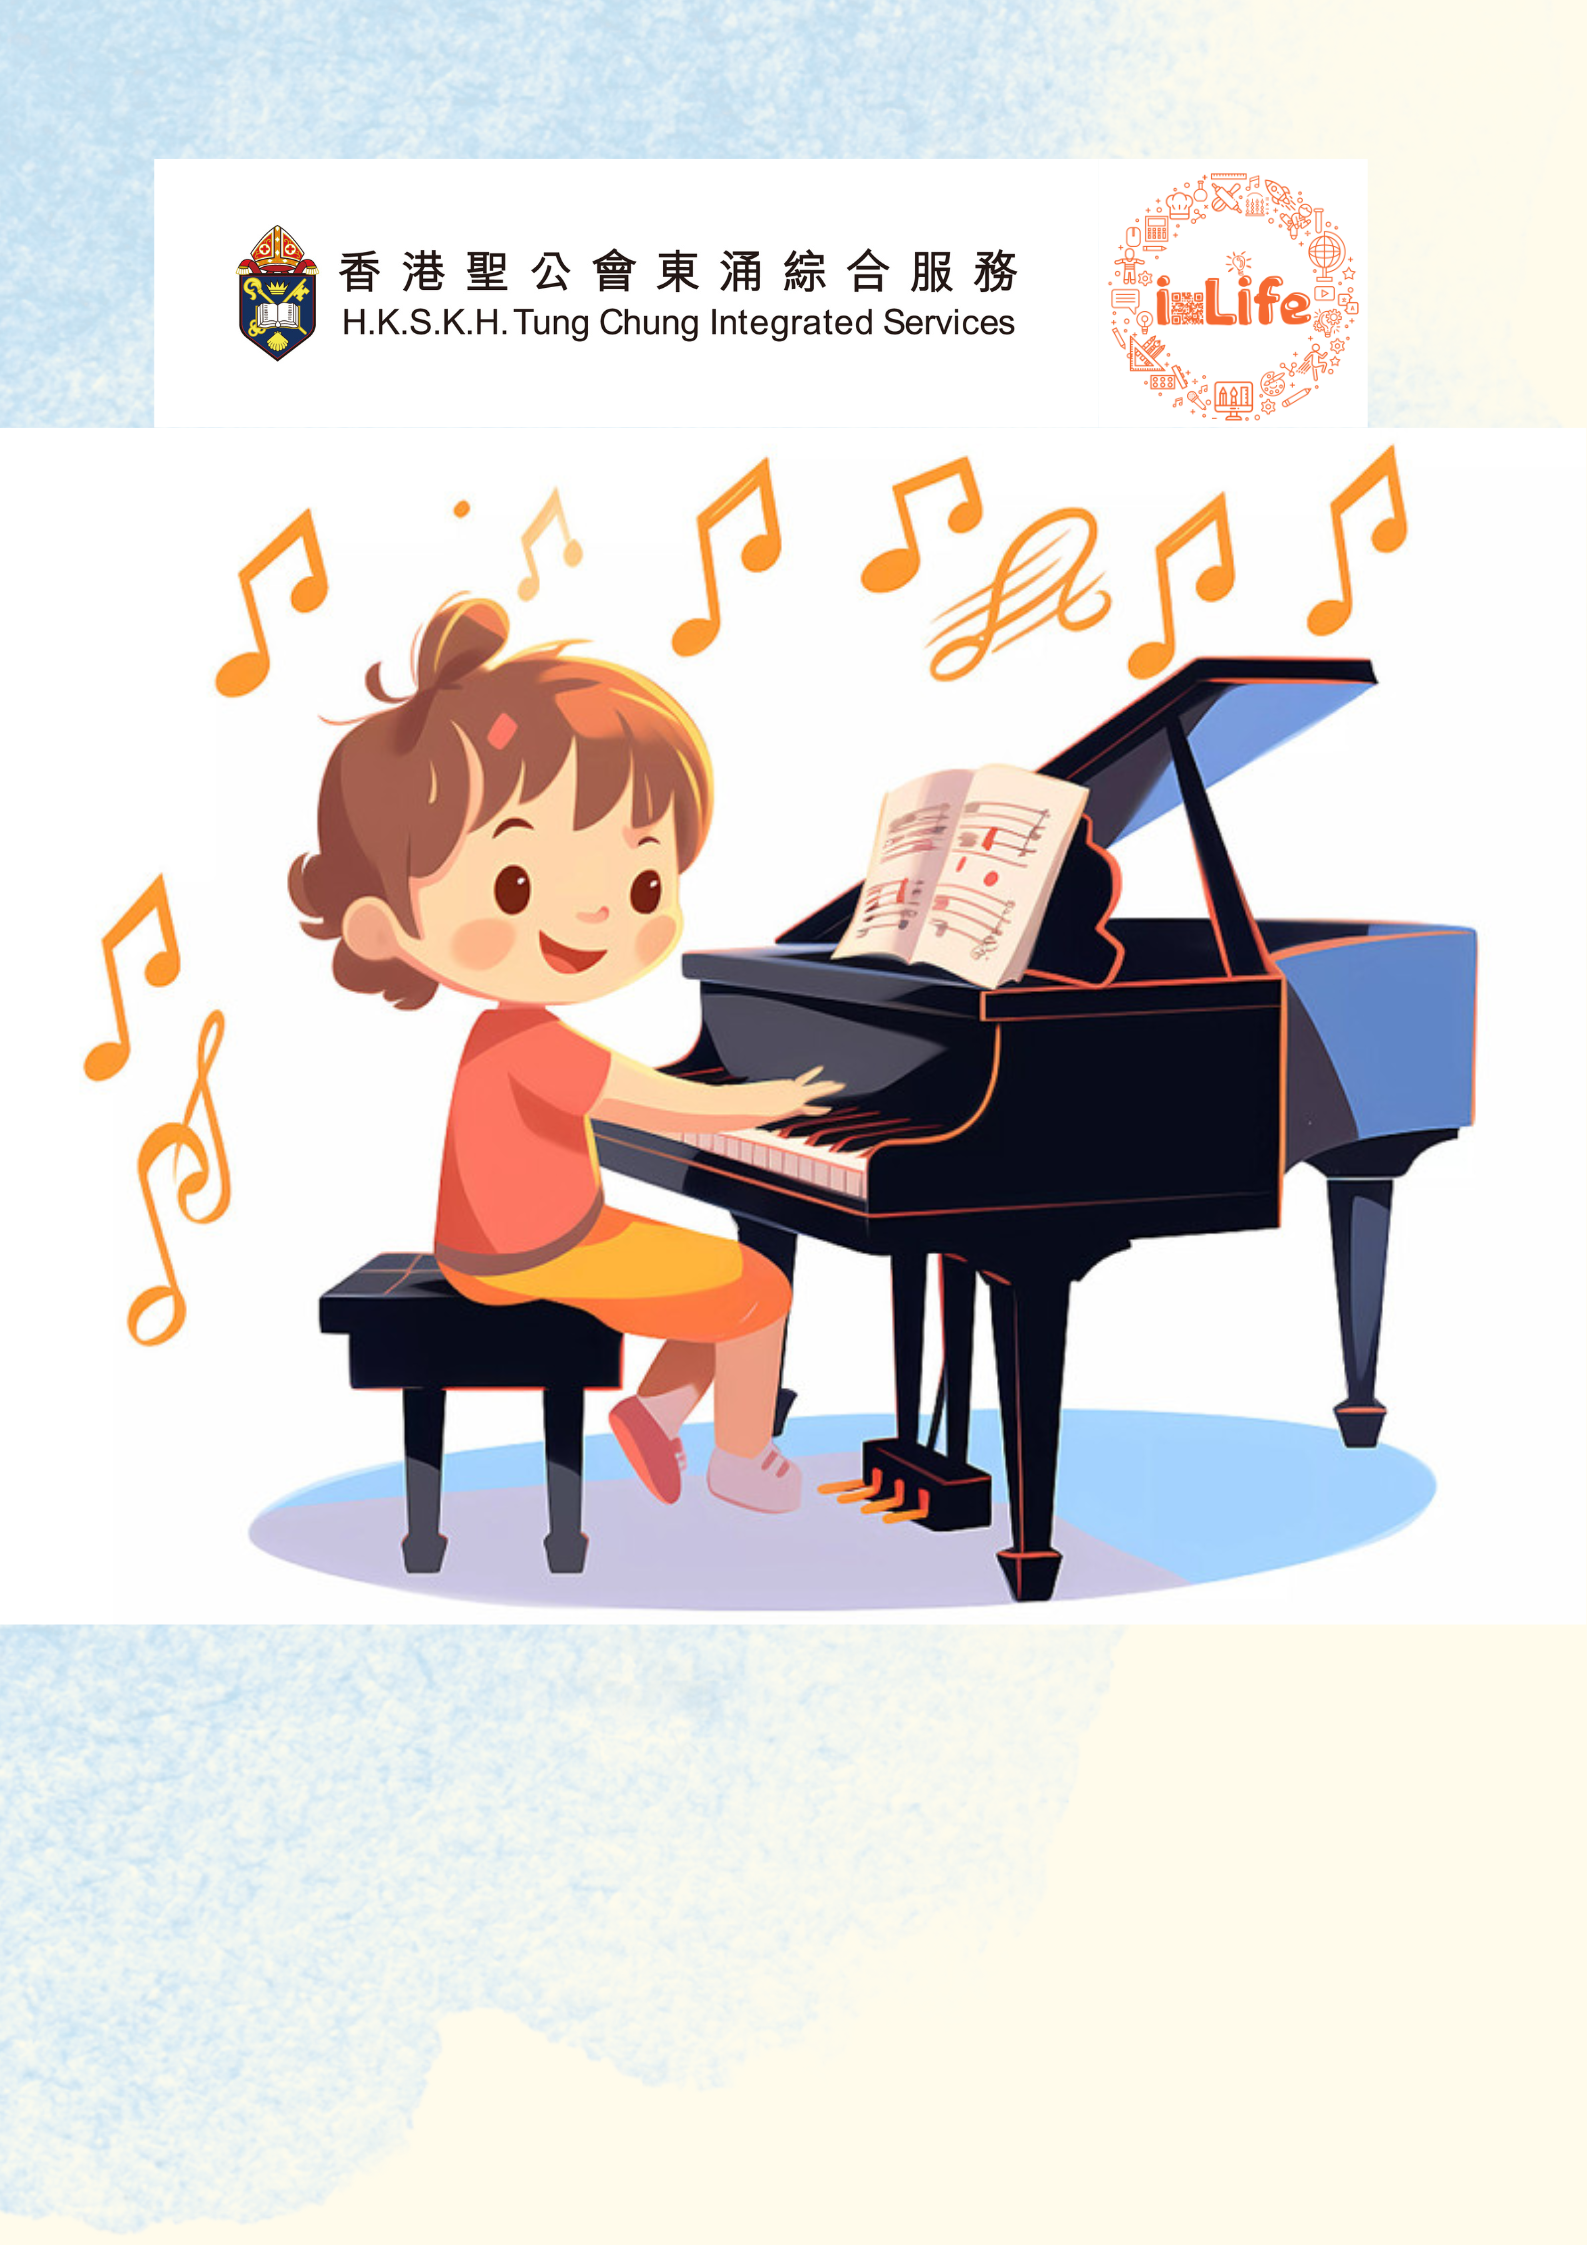 鋼琴(個別教授，富東) 5月 陳琪薇